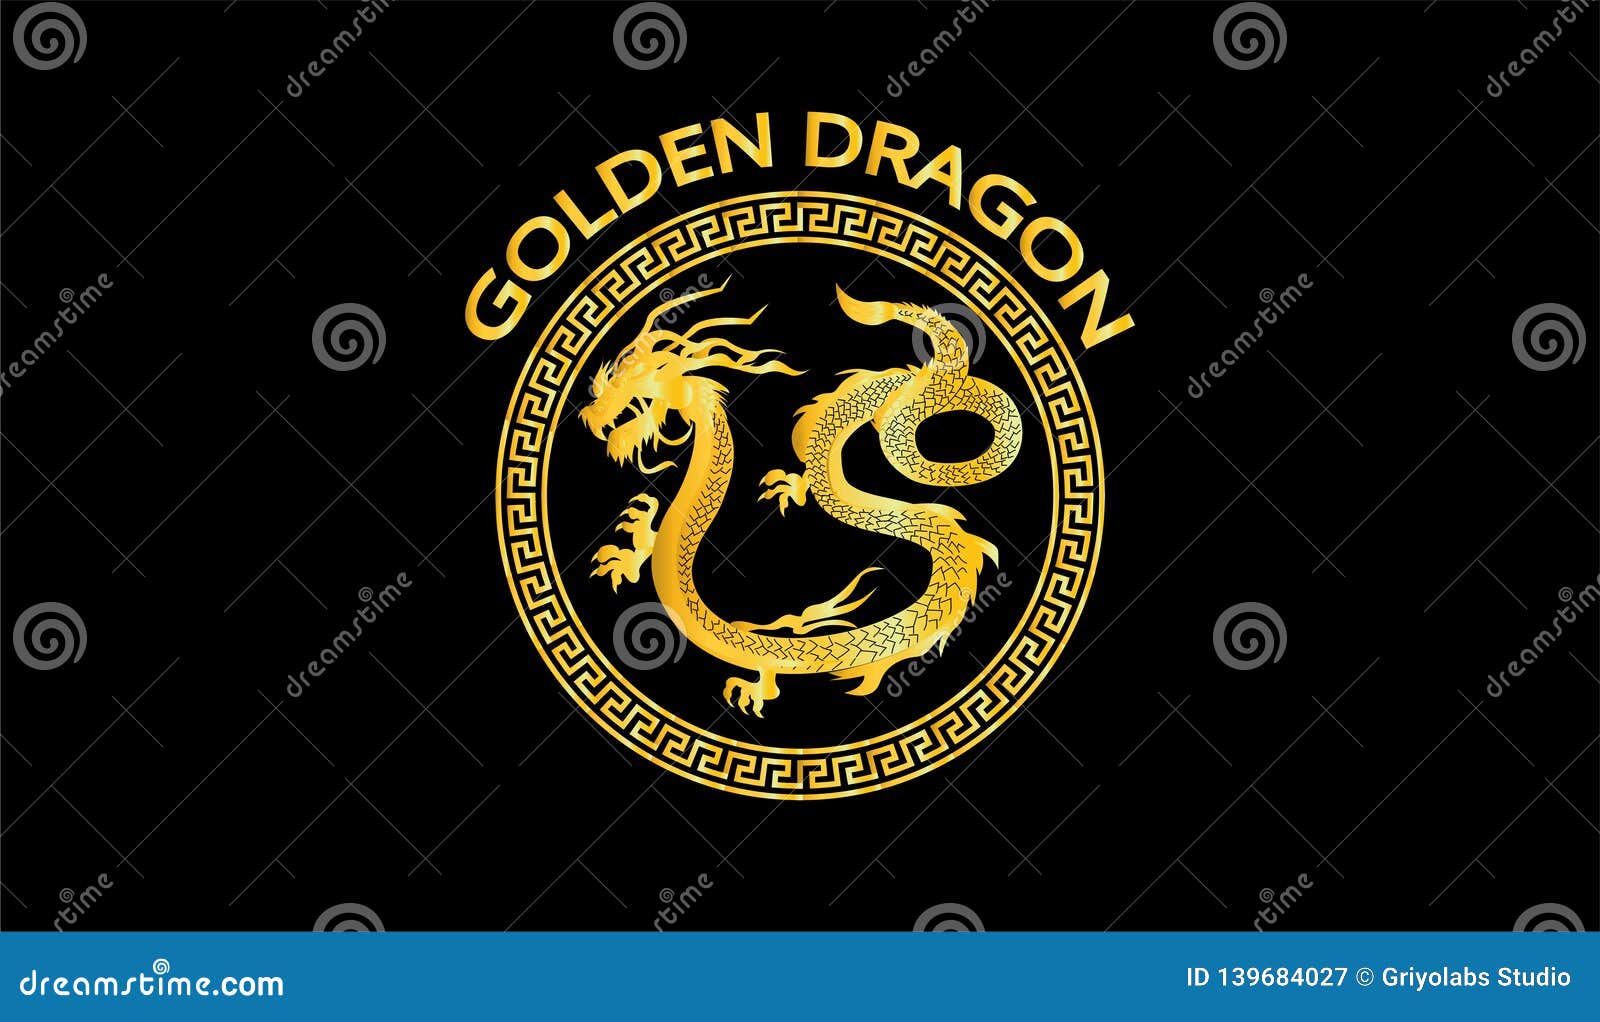 golden dragon logo